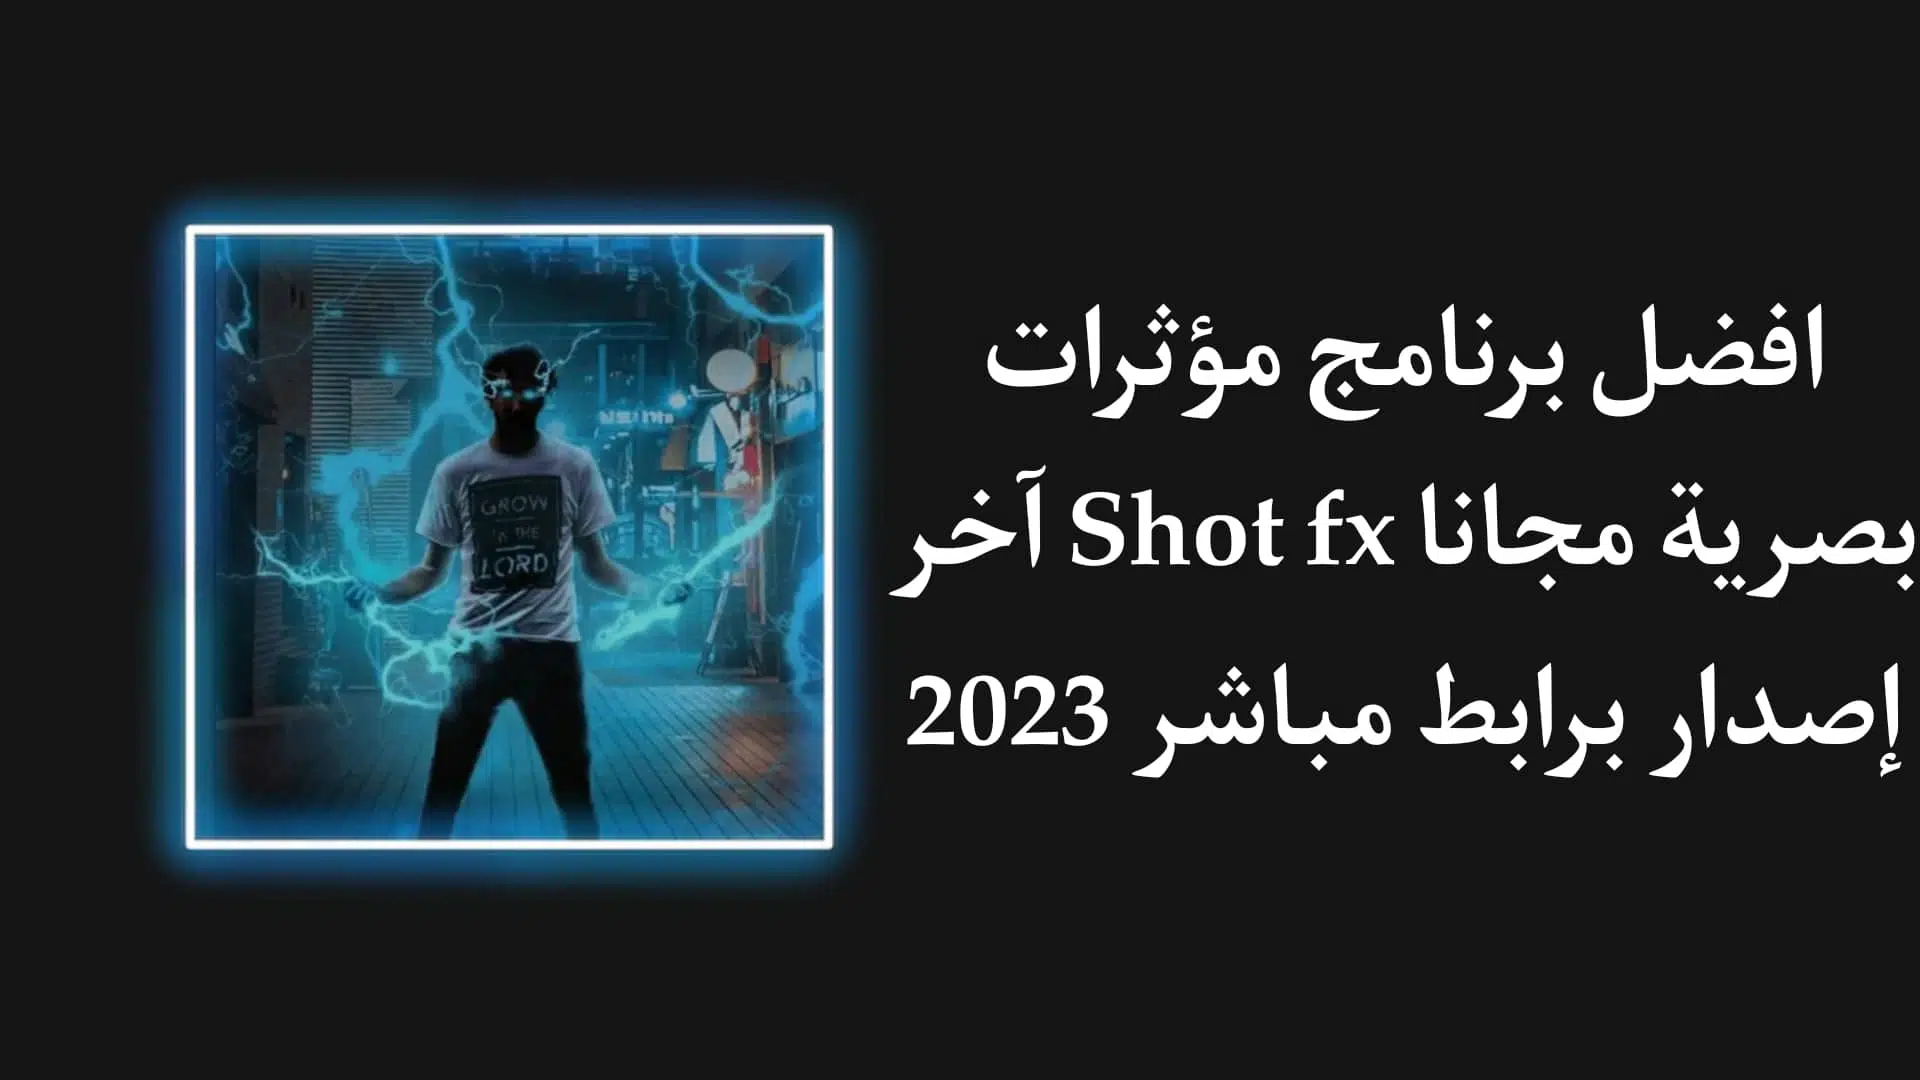 تحميل افضل برنامج مؤثرات سينمائية 2023 للاندرويد Snap FX APK